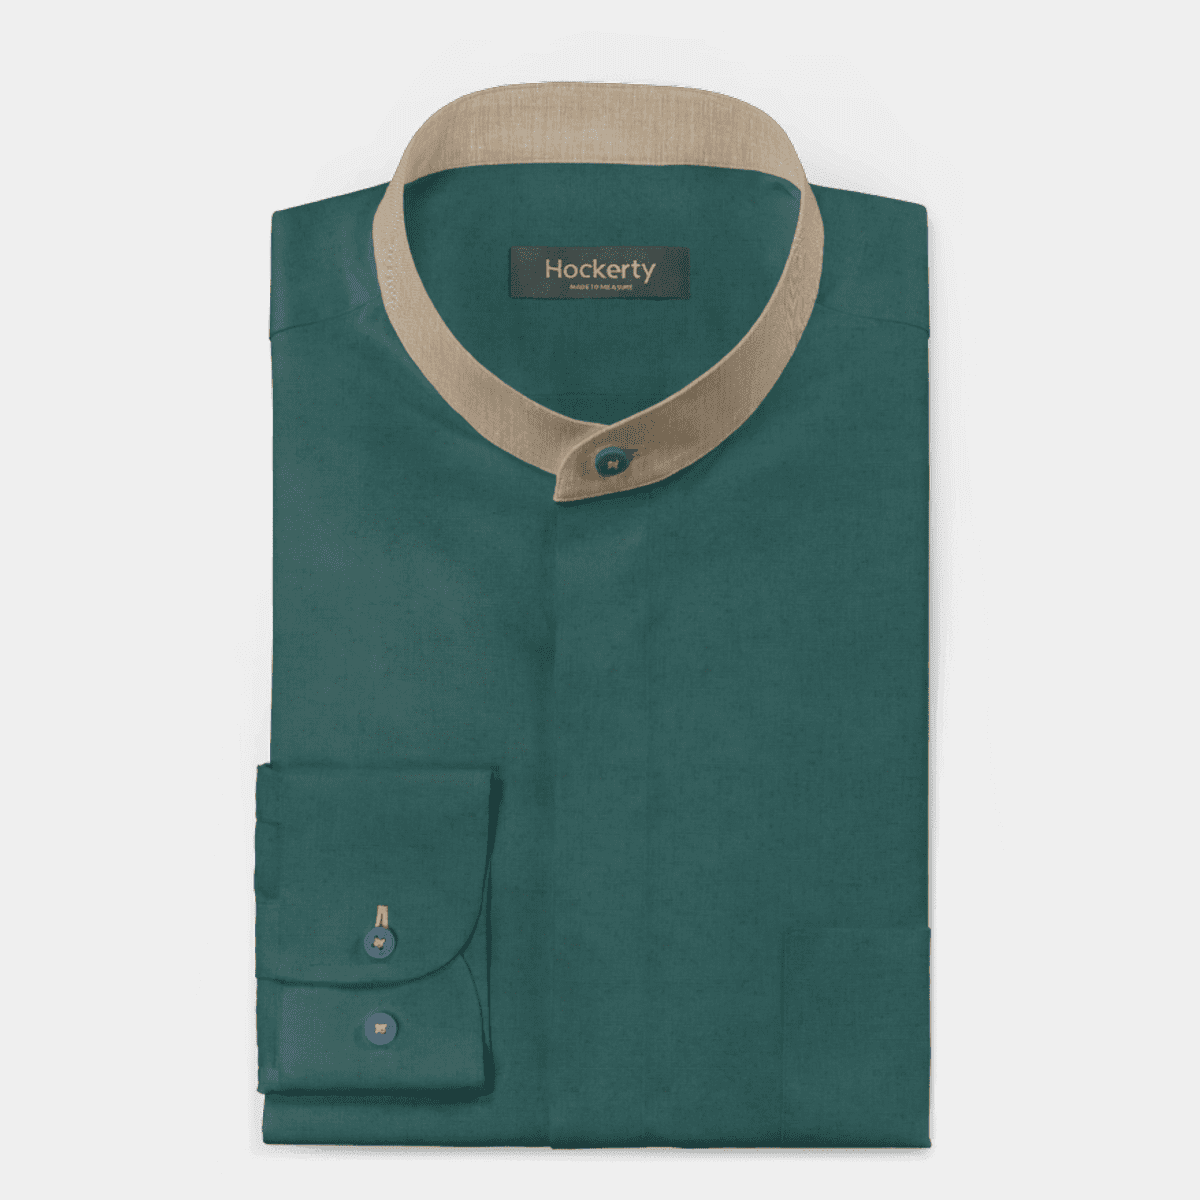 Black linen chinese collar Shirt with hidden buttons